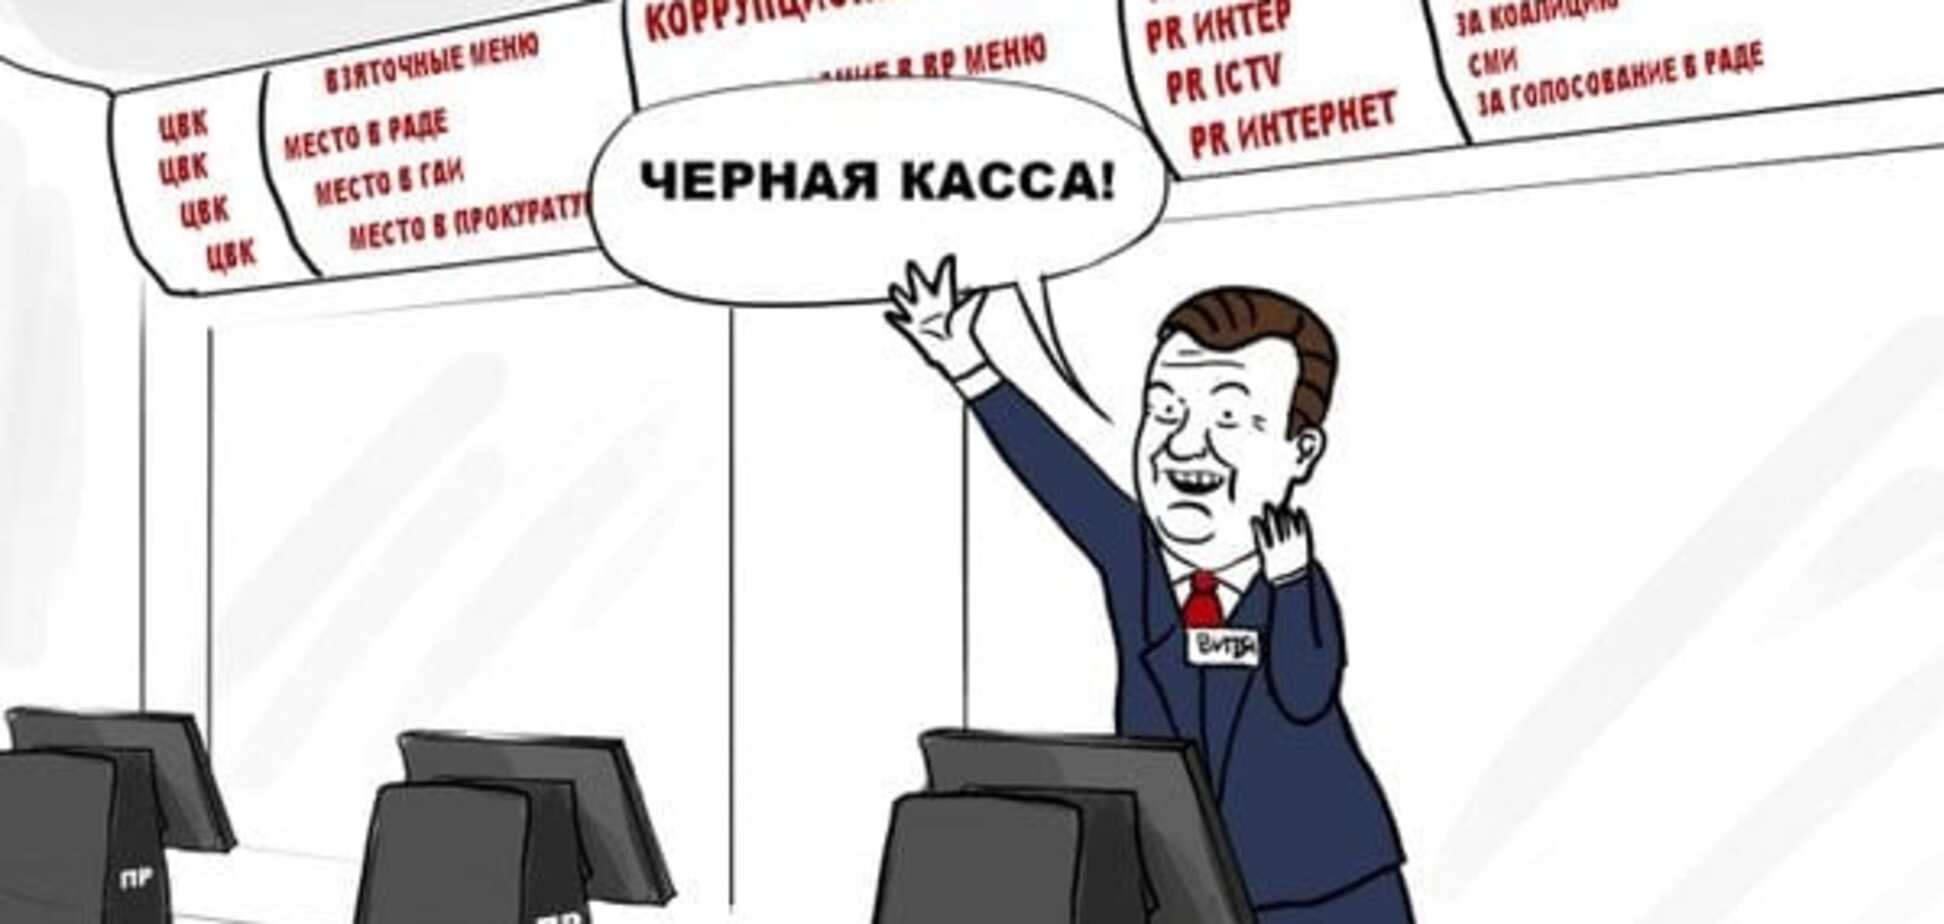 'Черная касса!': карикатурист высмеял 'взяточное меню' Януковича. Фотофакт